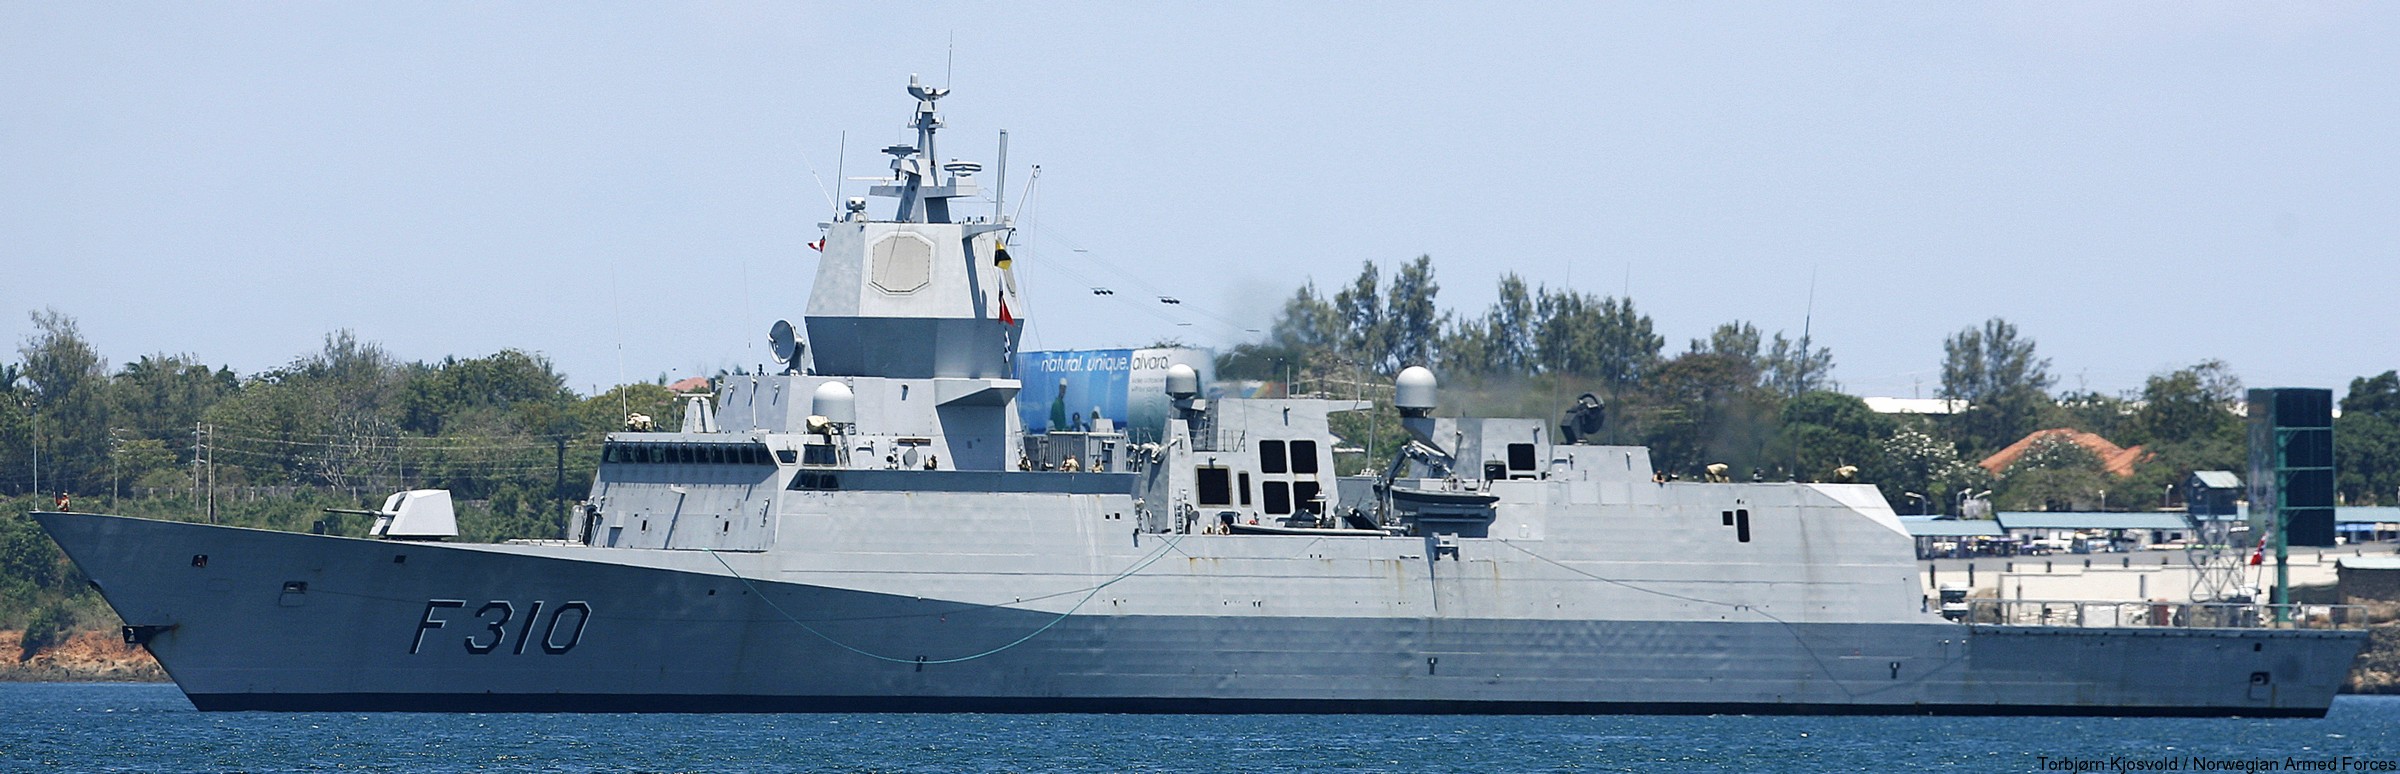 f-310 fridtjof nansen hnoms knm frigate royal norwegian navy sjoforsvaret 58